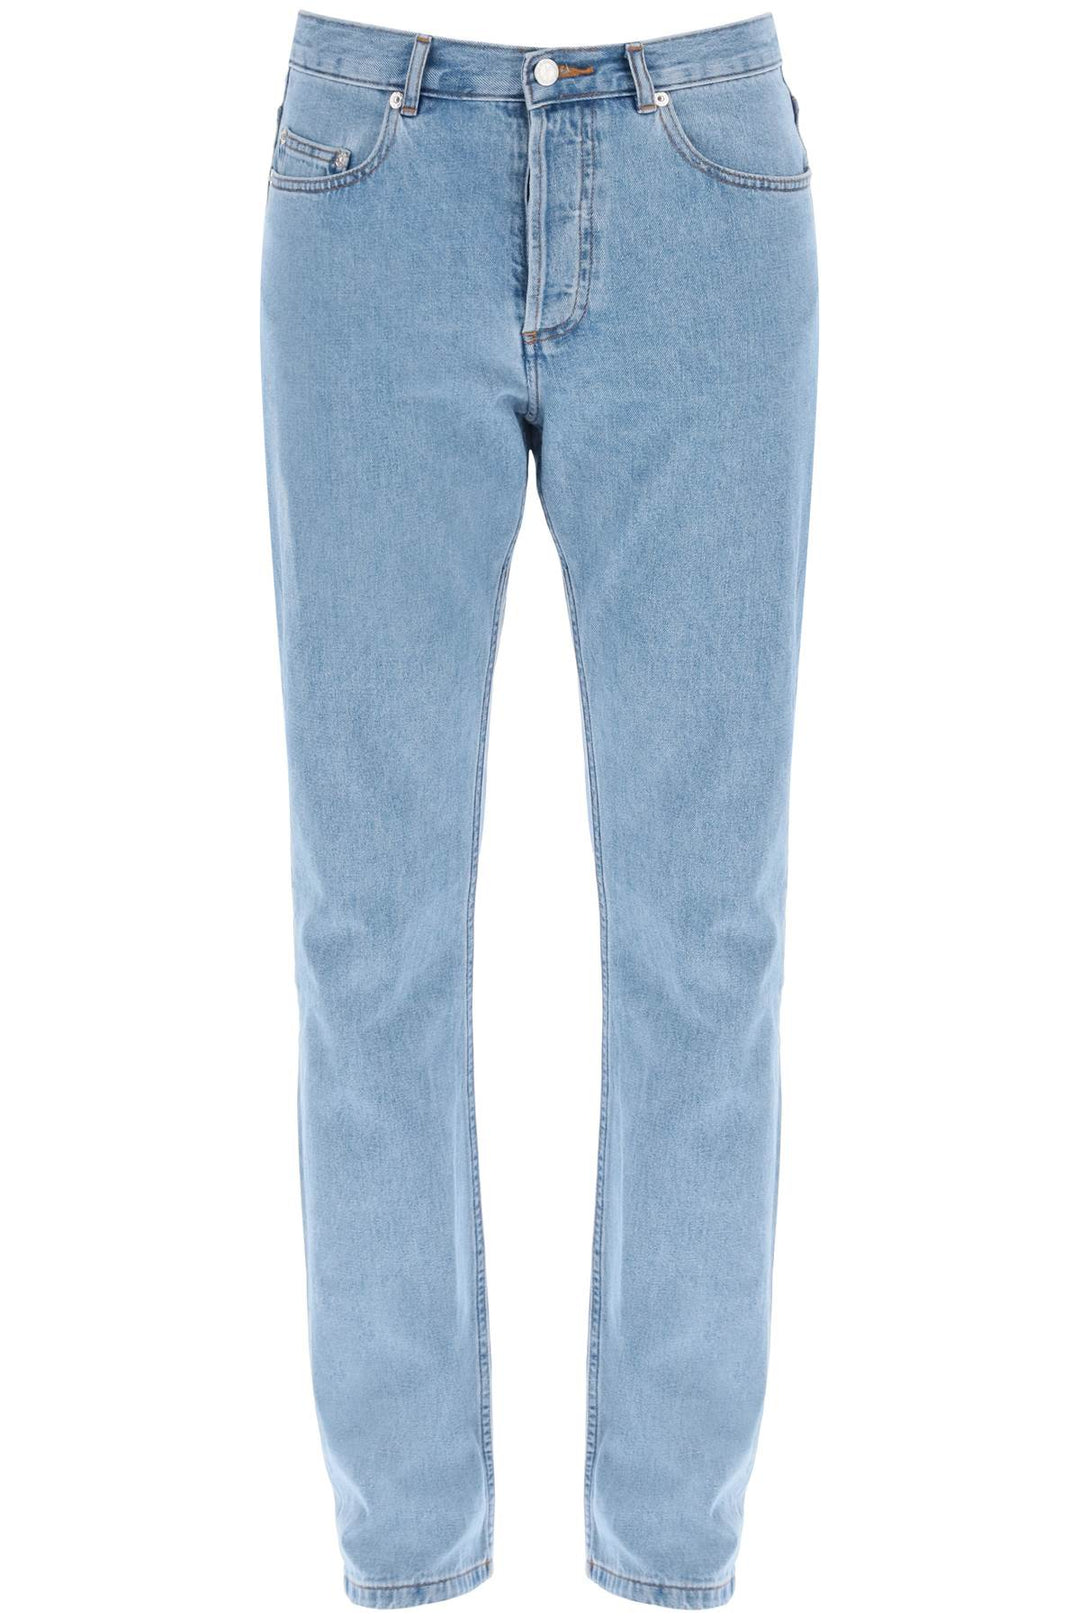 A.p.c. jeans regular standard-0